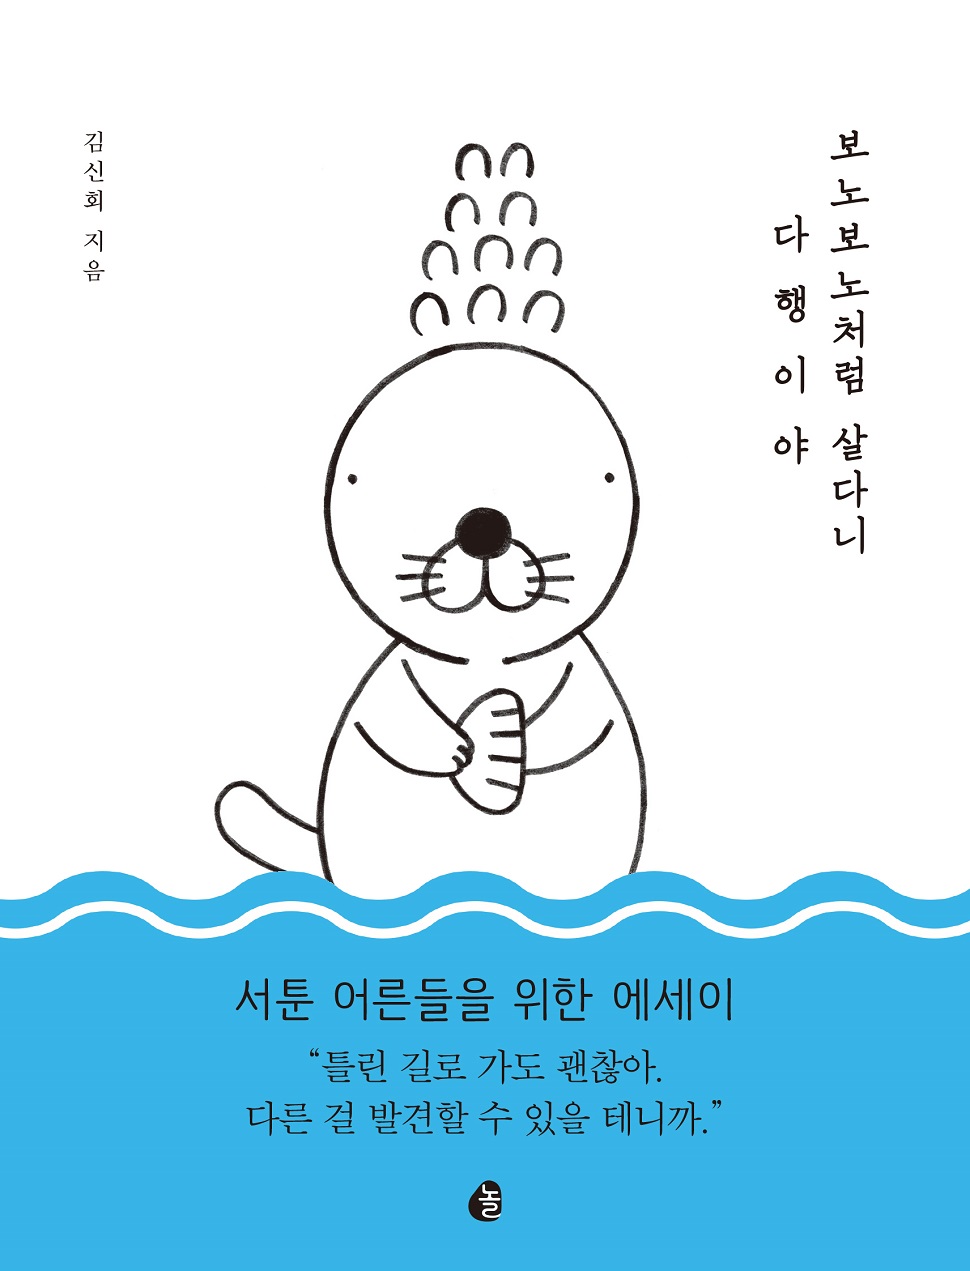 <보노보노처럼 살다니 다행이야>, 김신회 지음, 놀, 320쪽, 16,000원